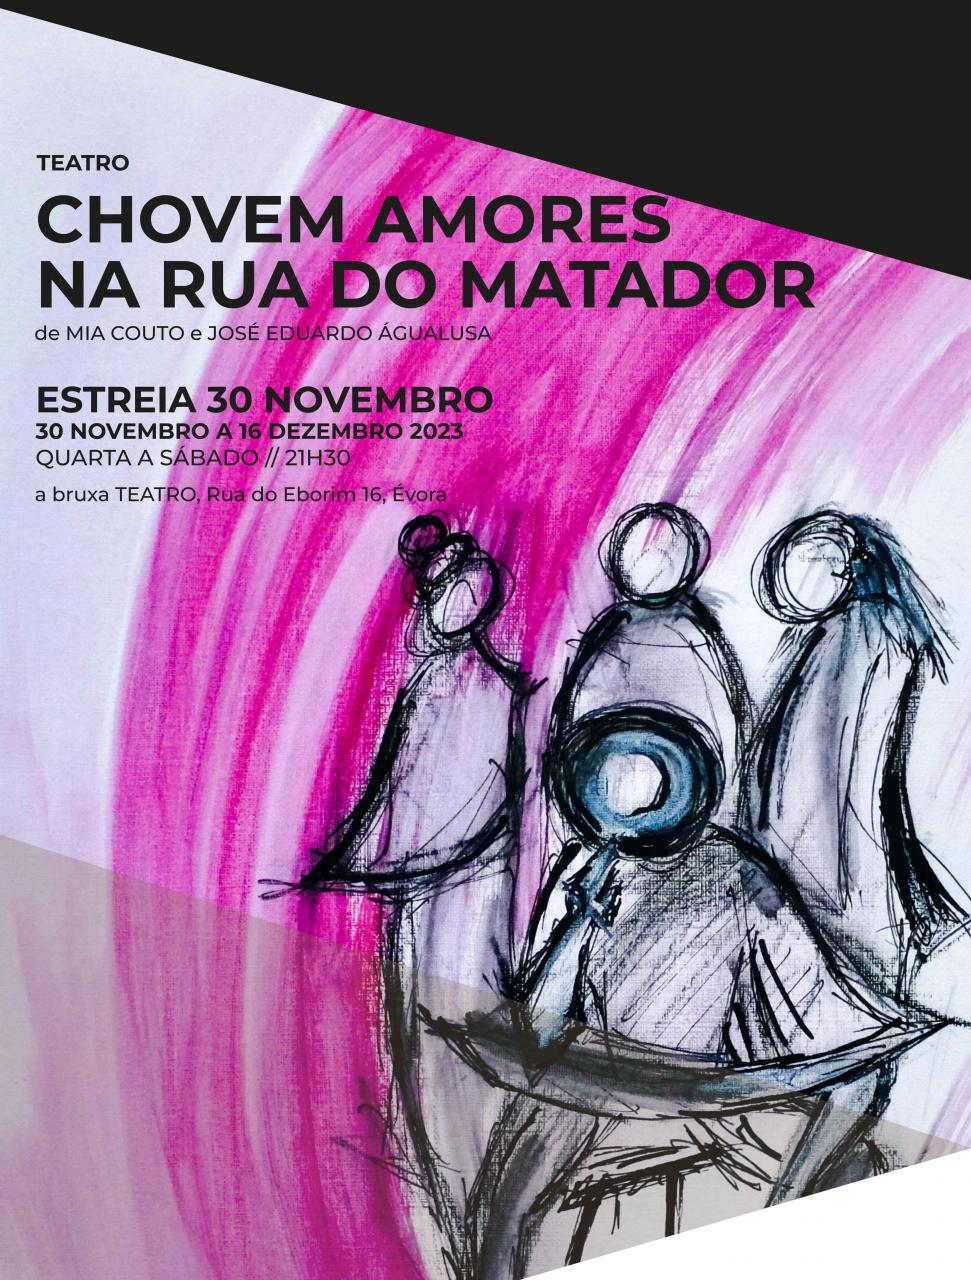  “CHOVEM AMORES NA RUA DO MATADOR” |  Estreia a 30 NOVEMBRO na Bruxa Teatro